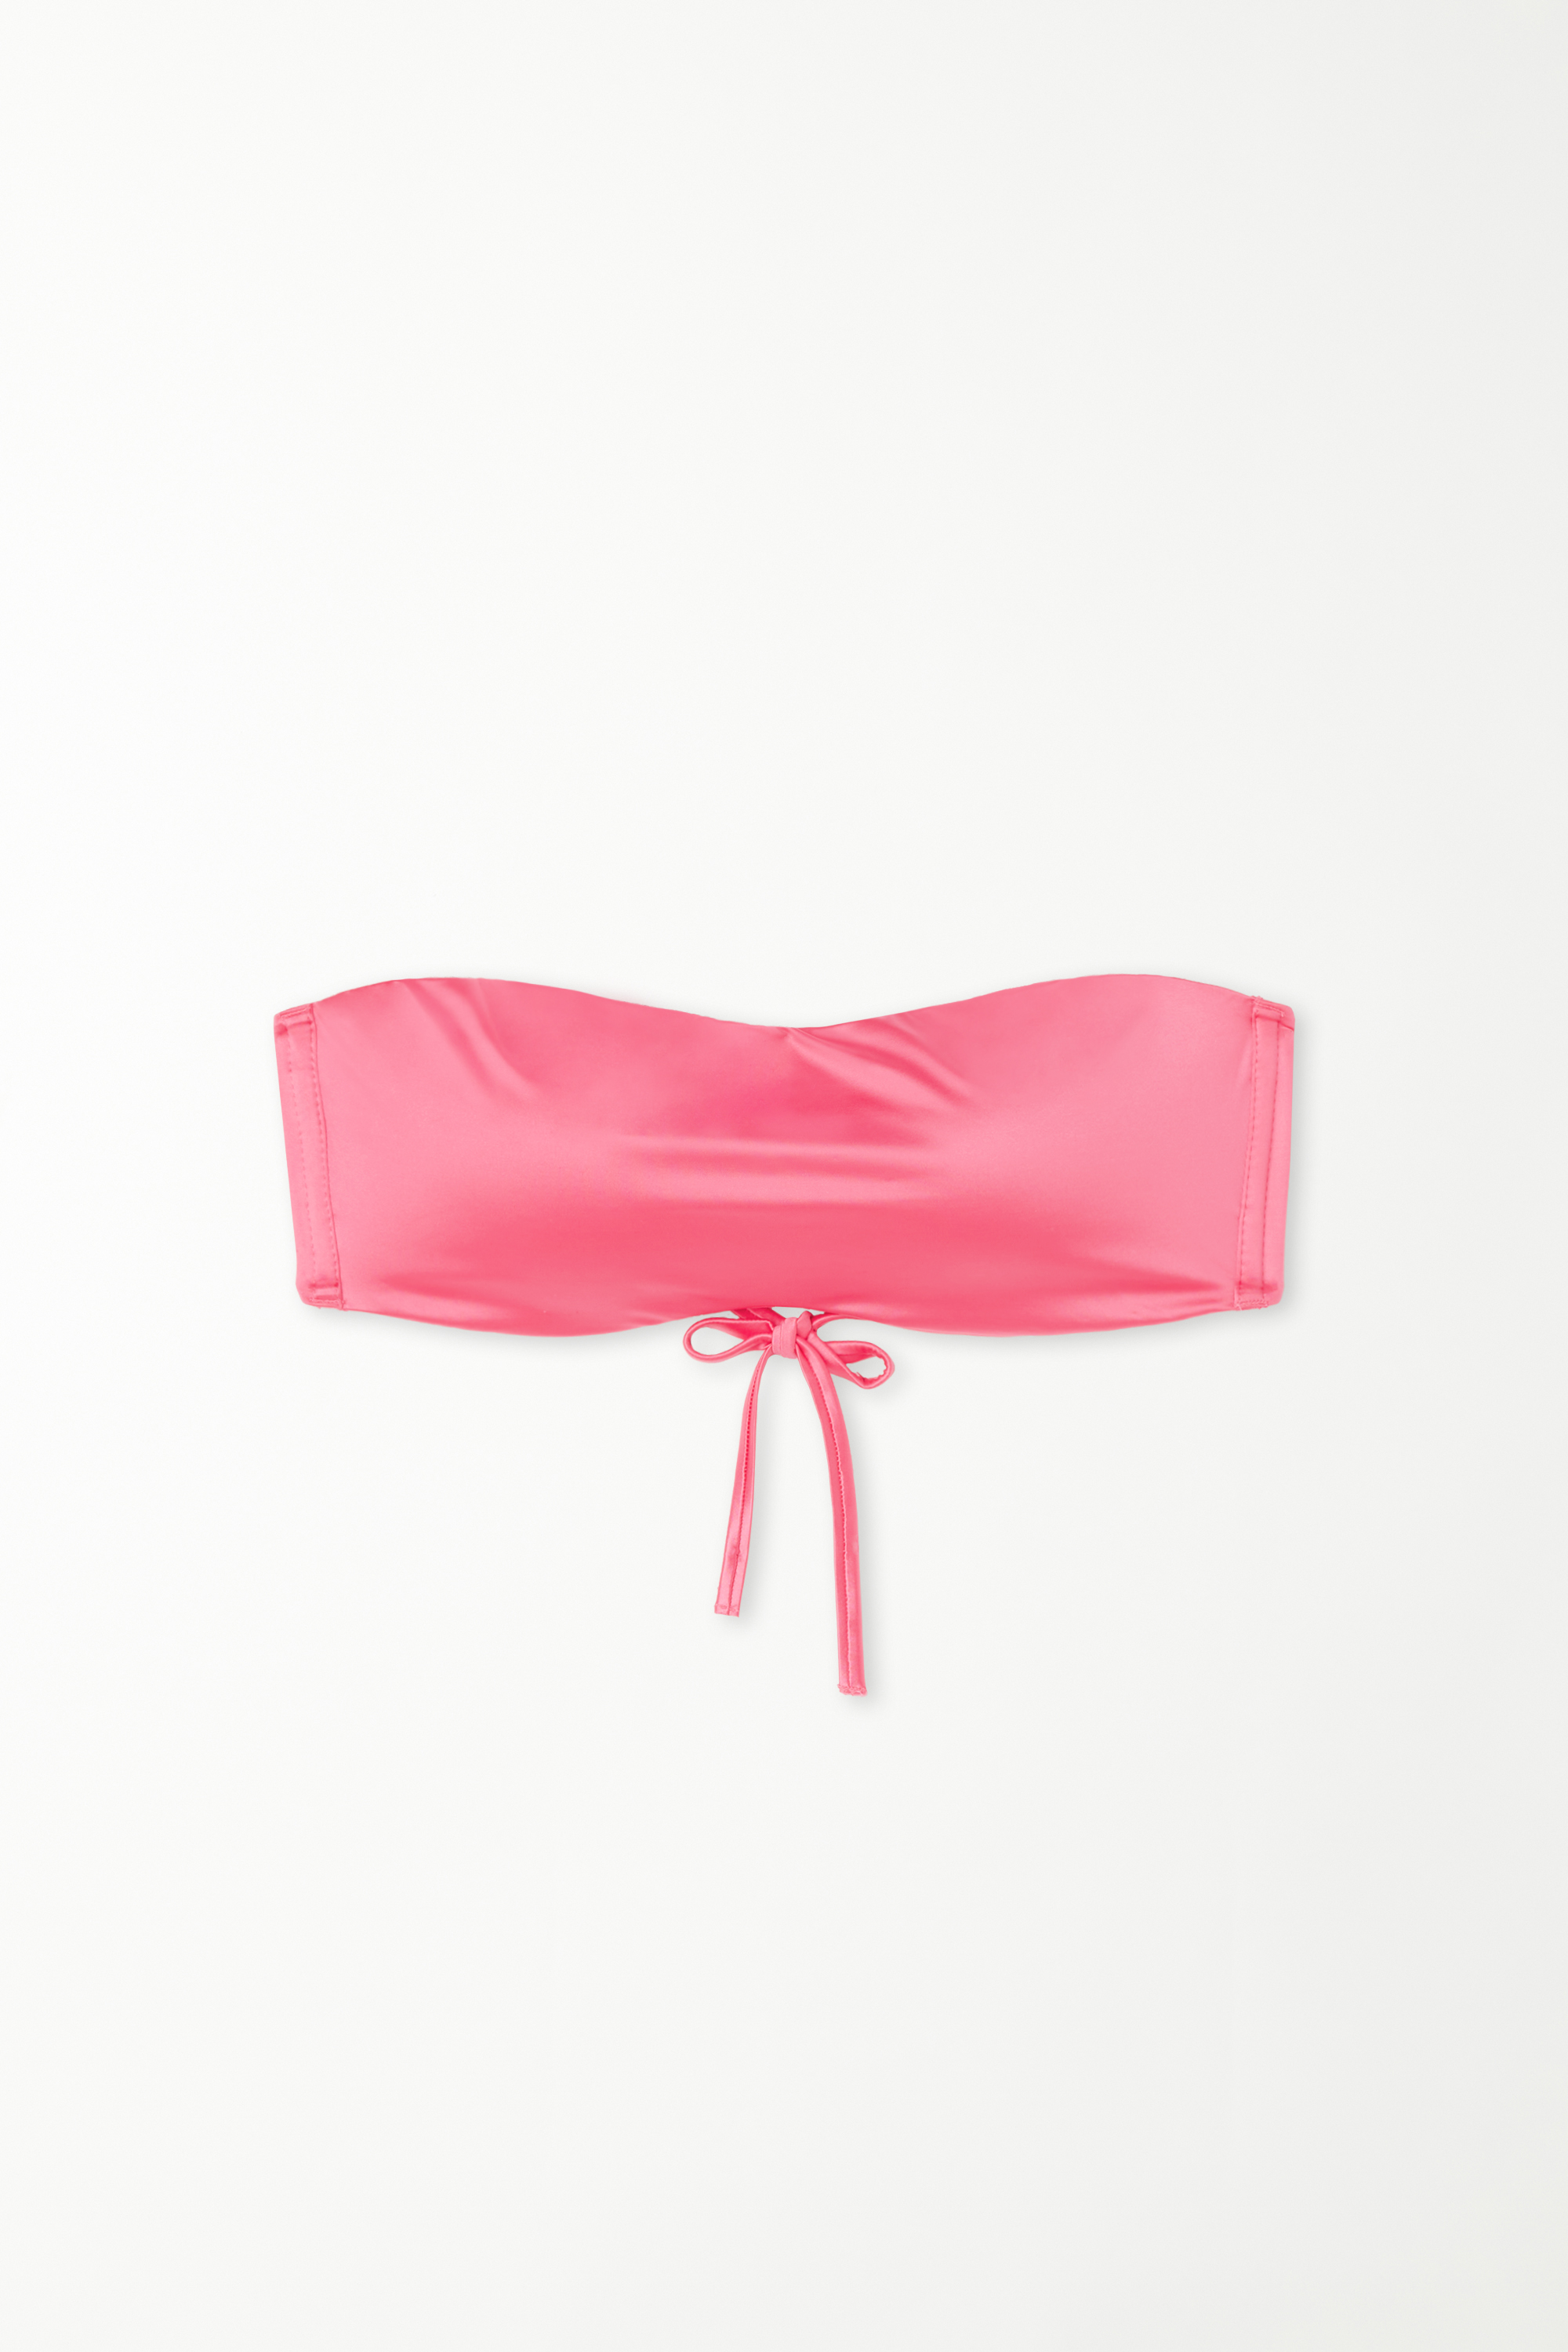 Bandeau-Bikinioberteil mit herausnehmbaren Polstern Shiny in sommerlichem Rosa